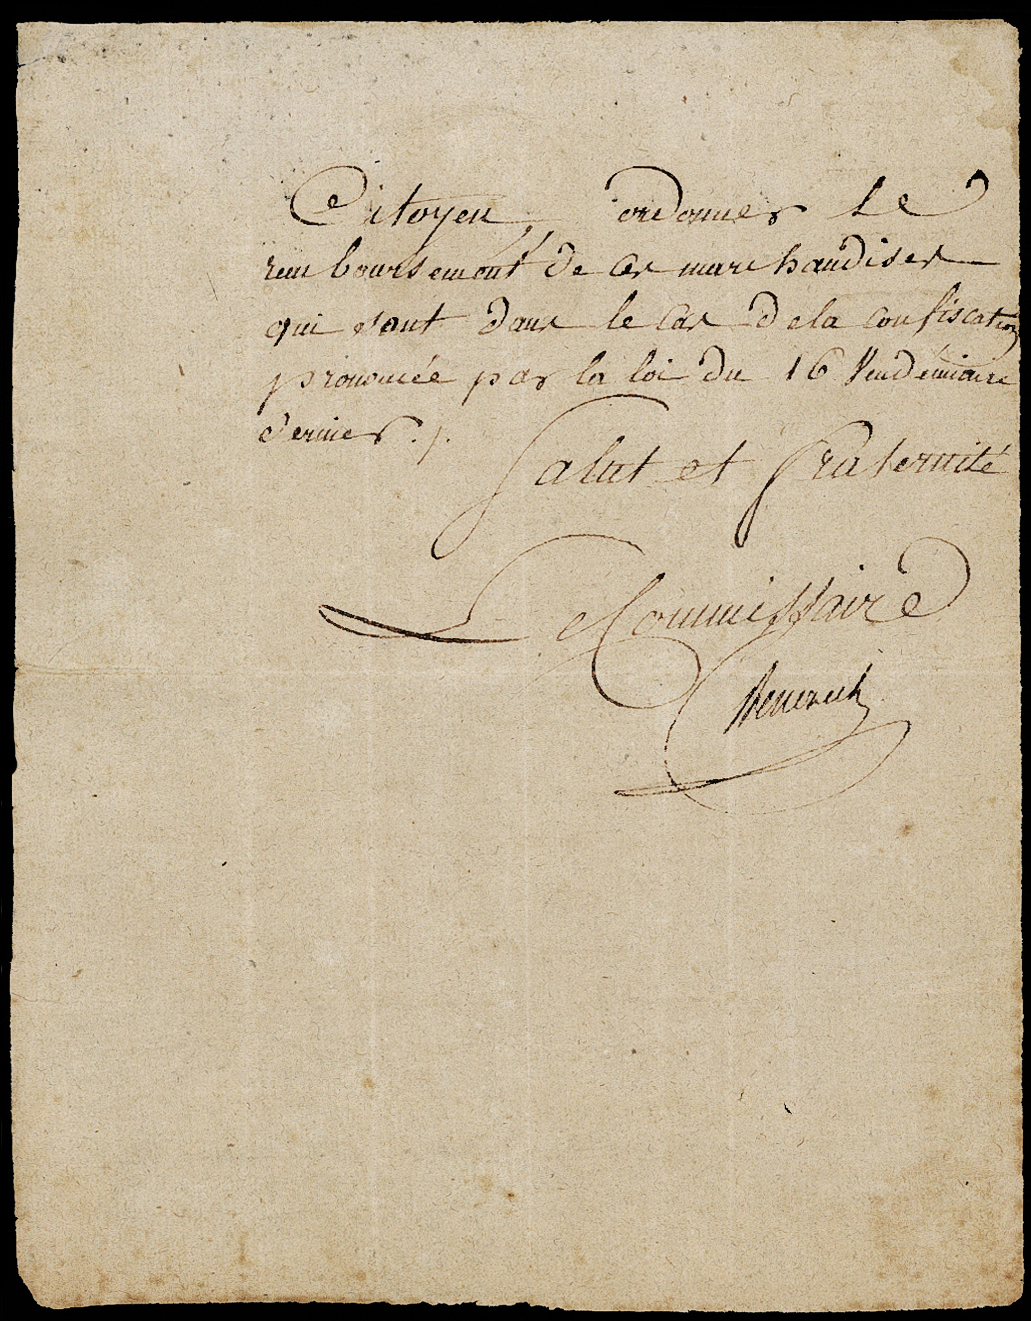 Referenz: benezech-pierre-commissaire-des-armes-et-futur-ministre-de-l-interieur-1795-1797